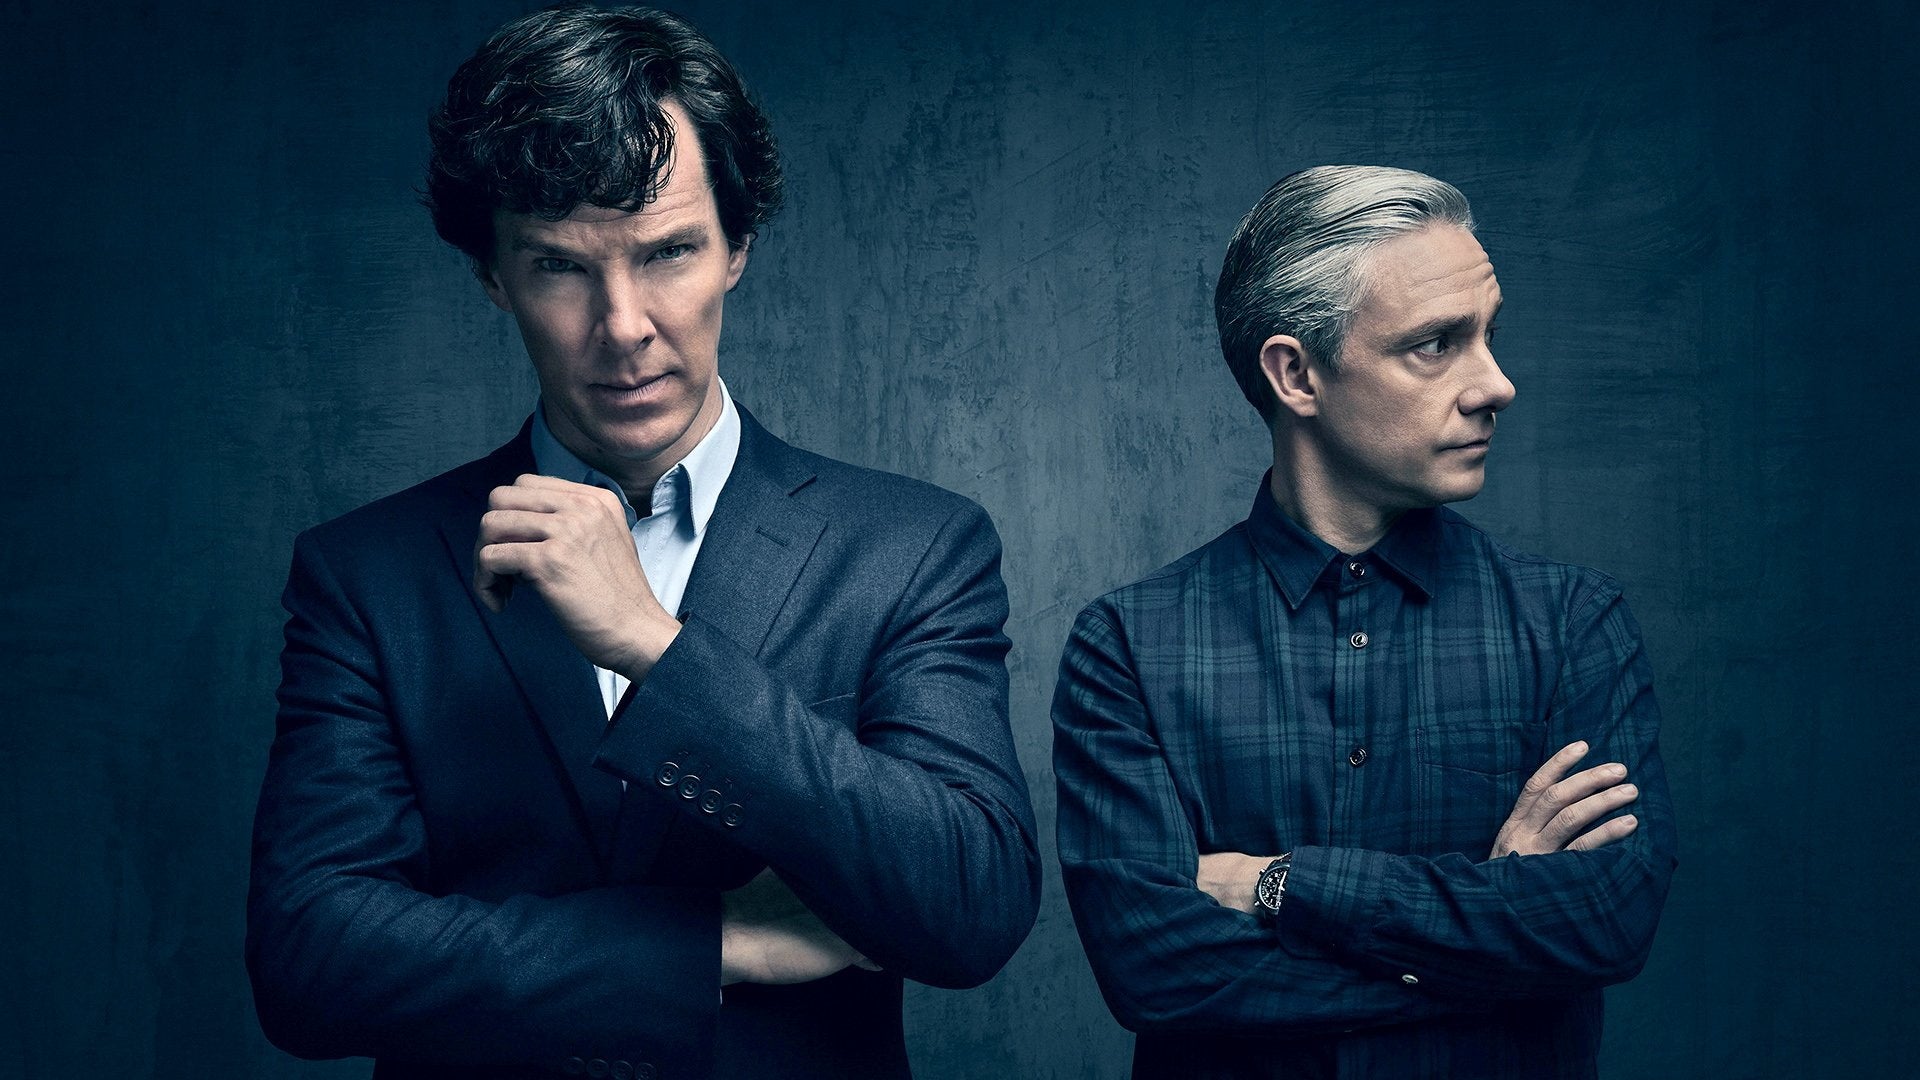 Sherlock: The Complete Series - Seasons 1-4